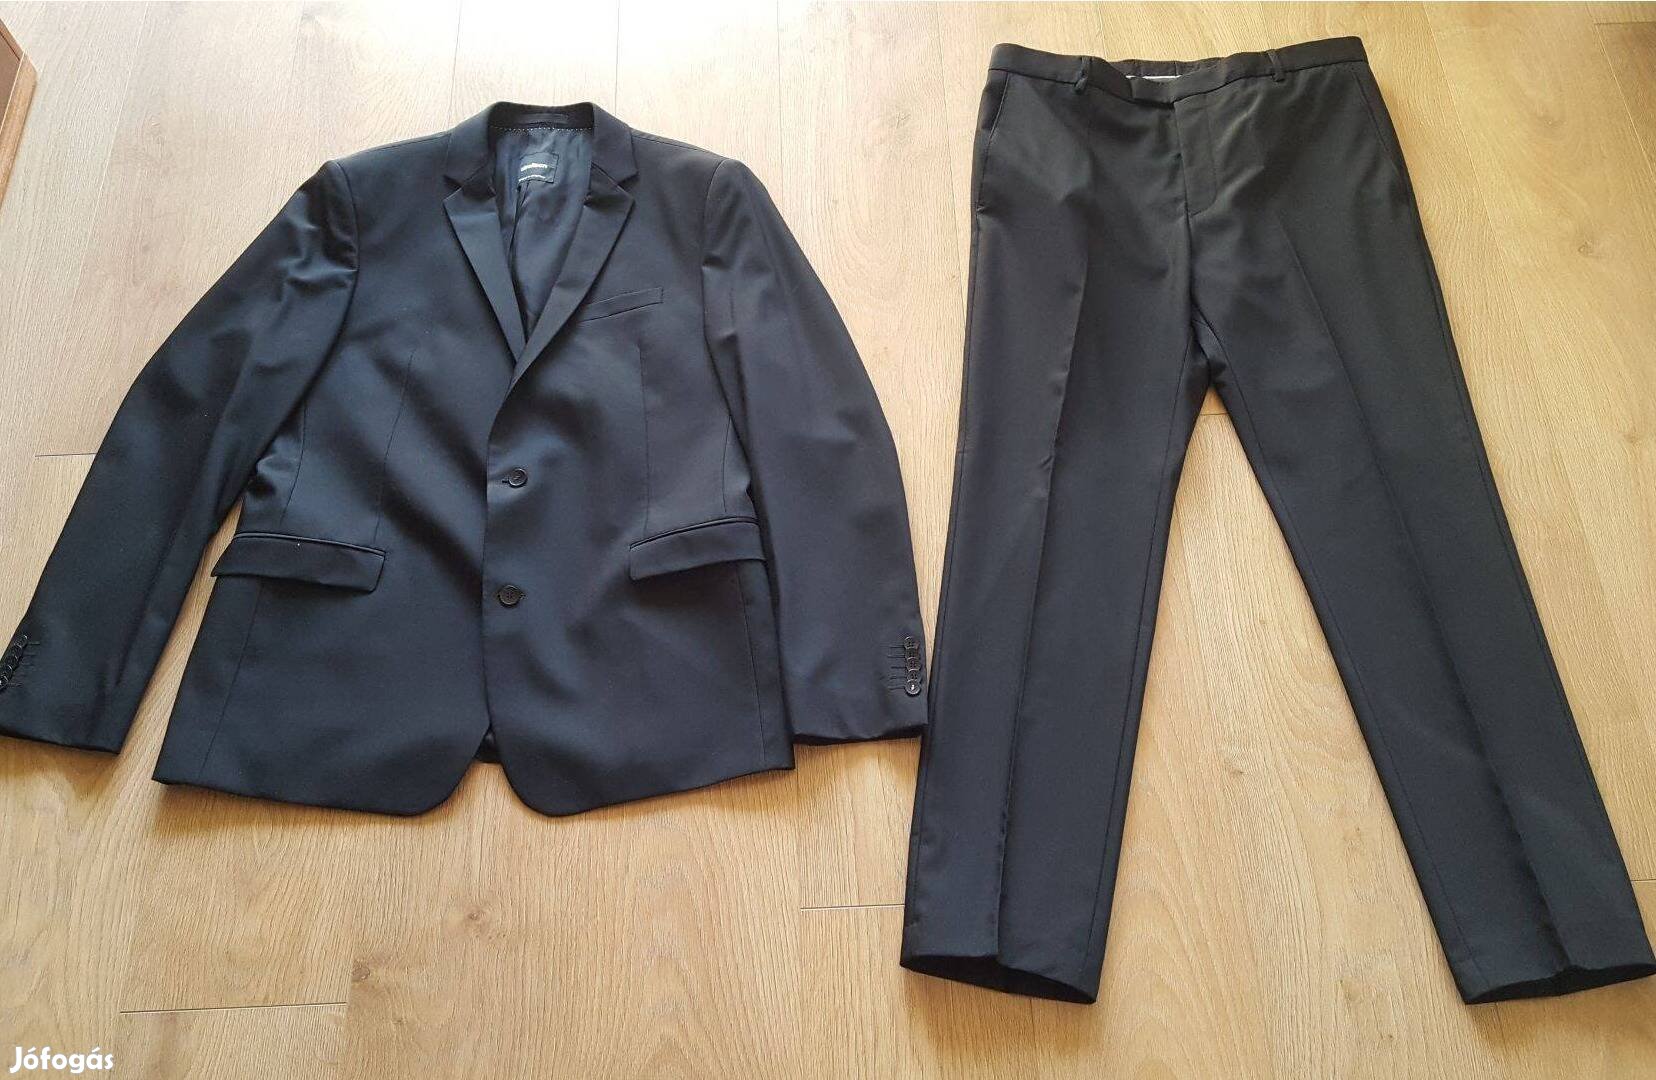 Strellson öltöny (zakó + nadrág) - 54-es - fekete